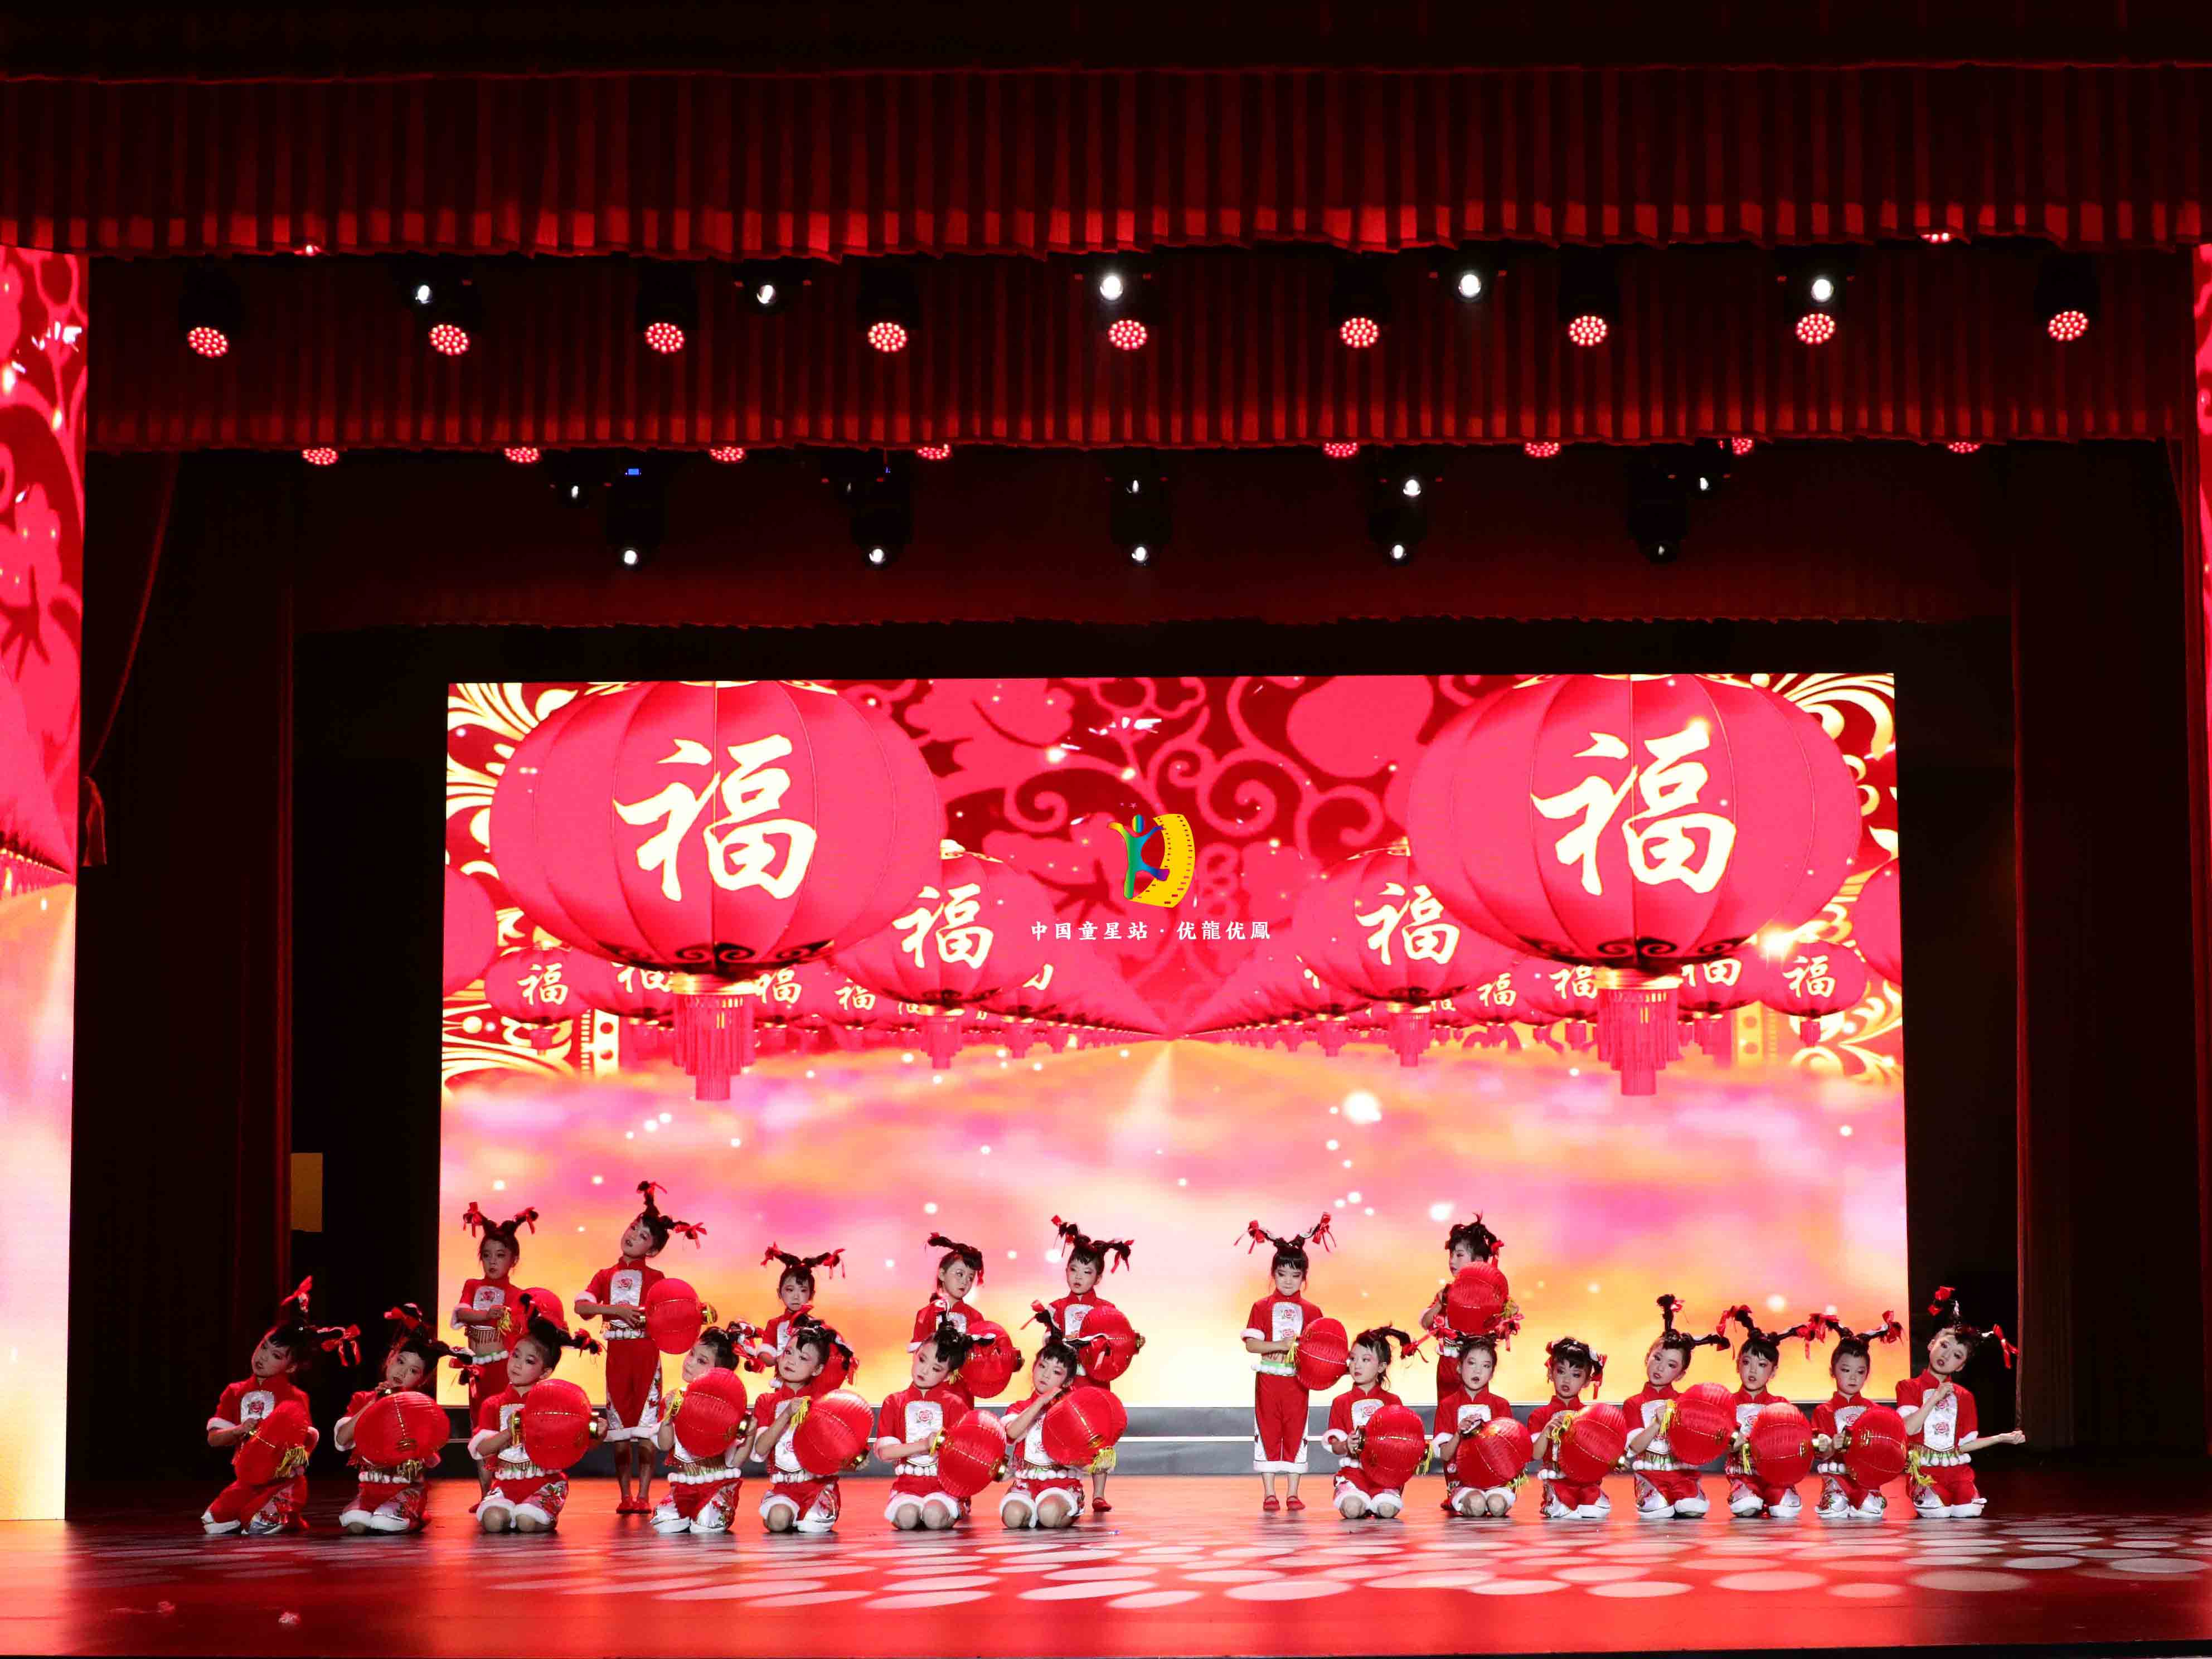 郑州代表团在人民大会堂舞台上表演的舞蹈《过大年》下面是部分花絮